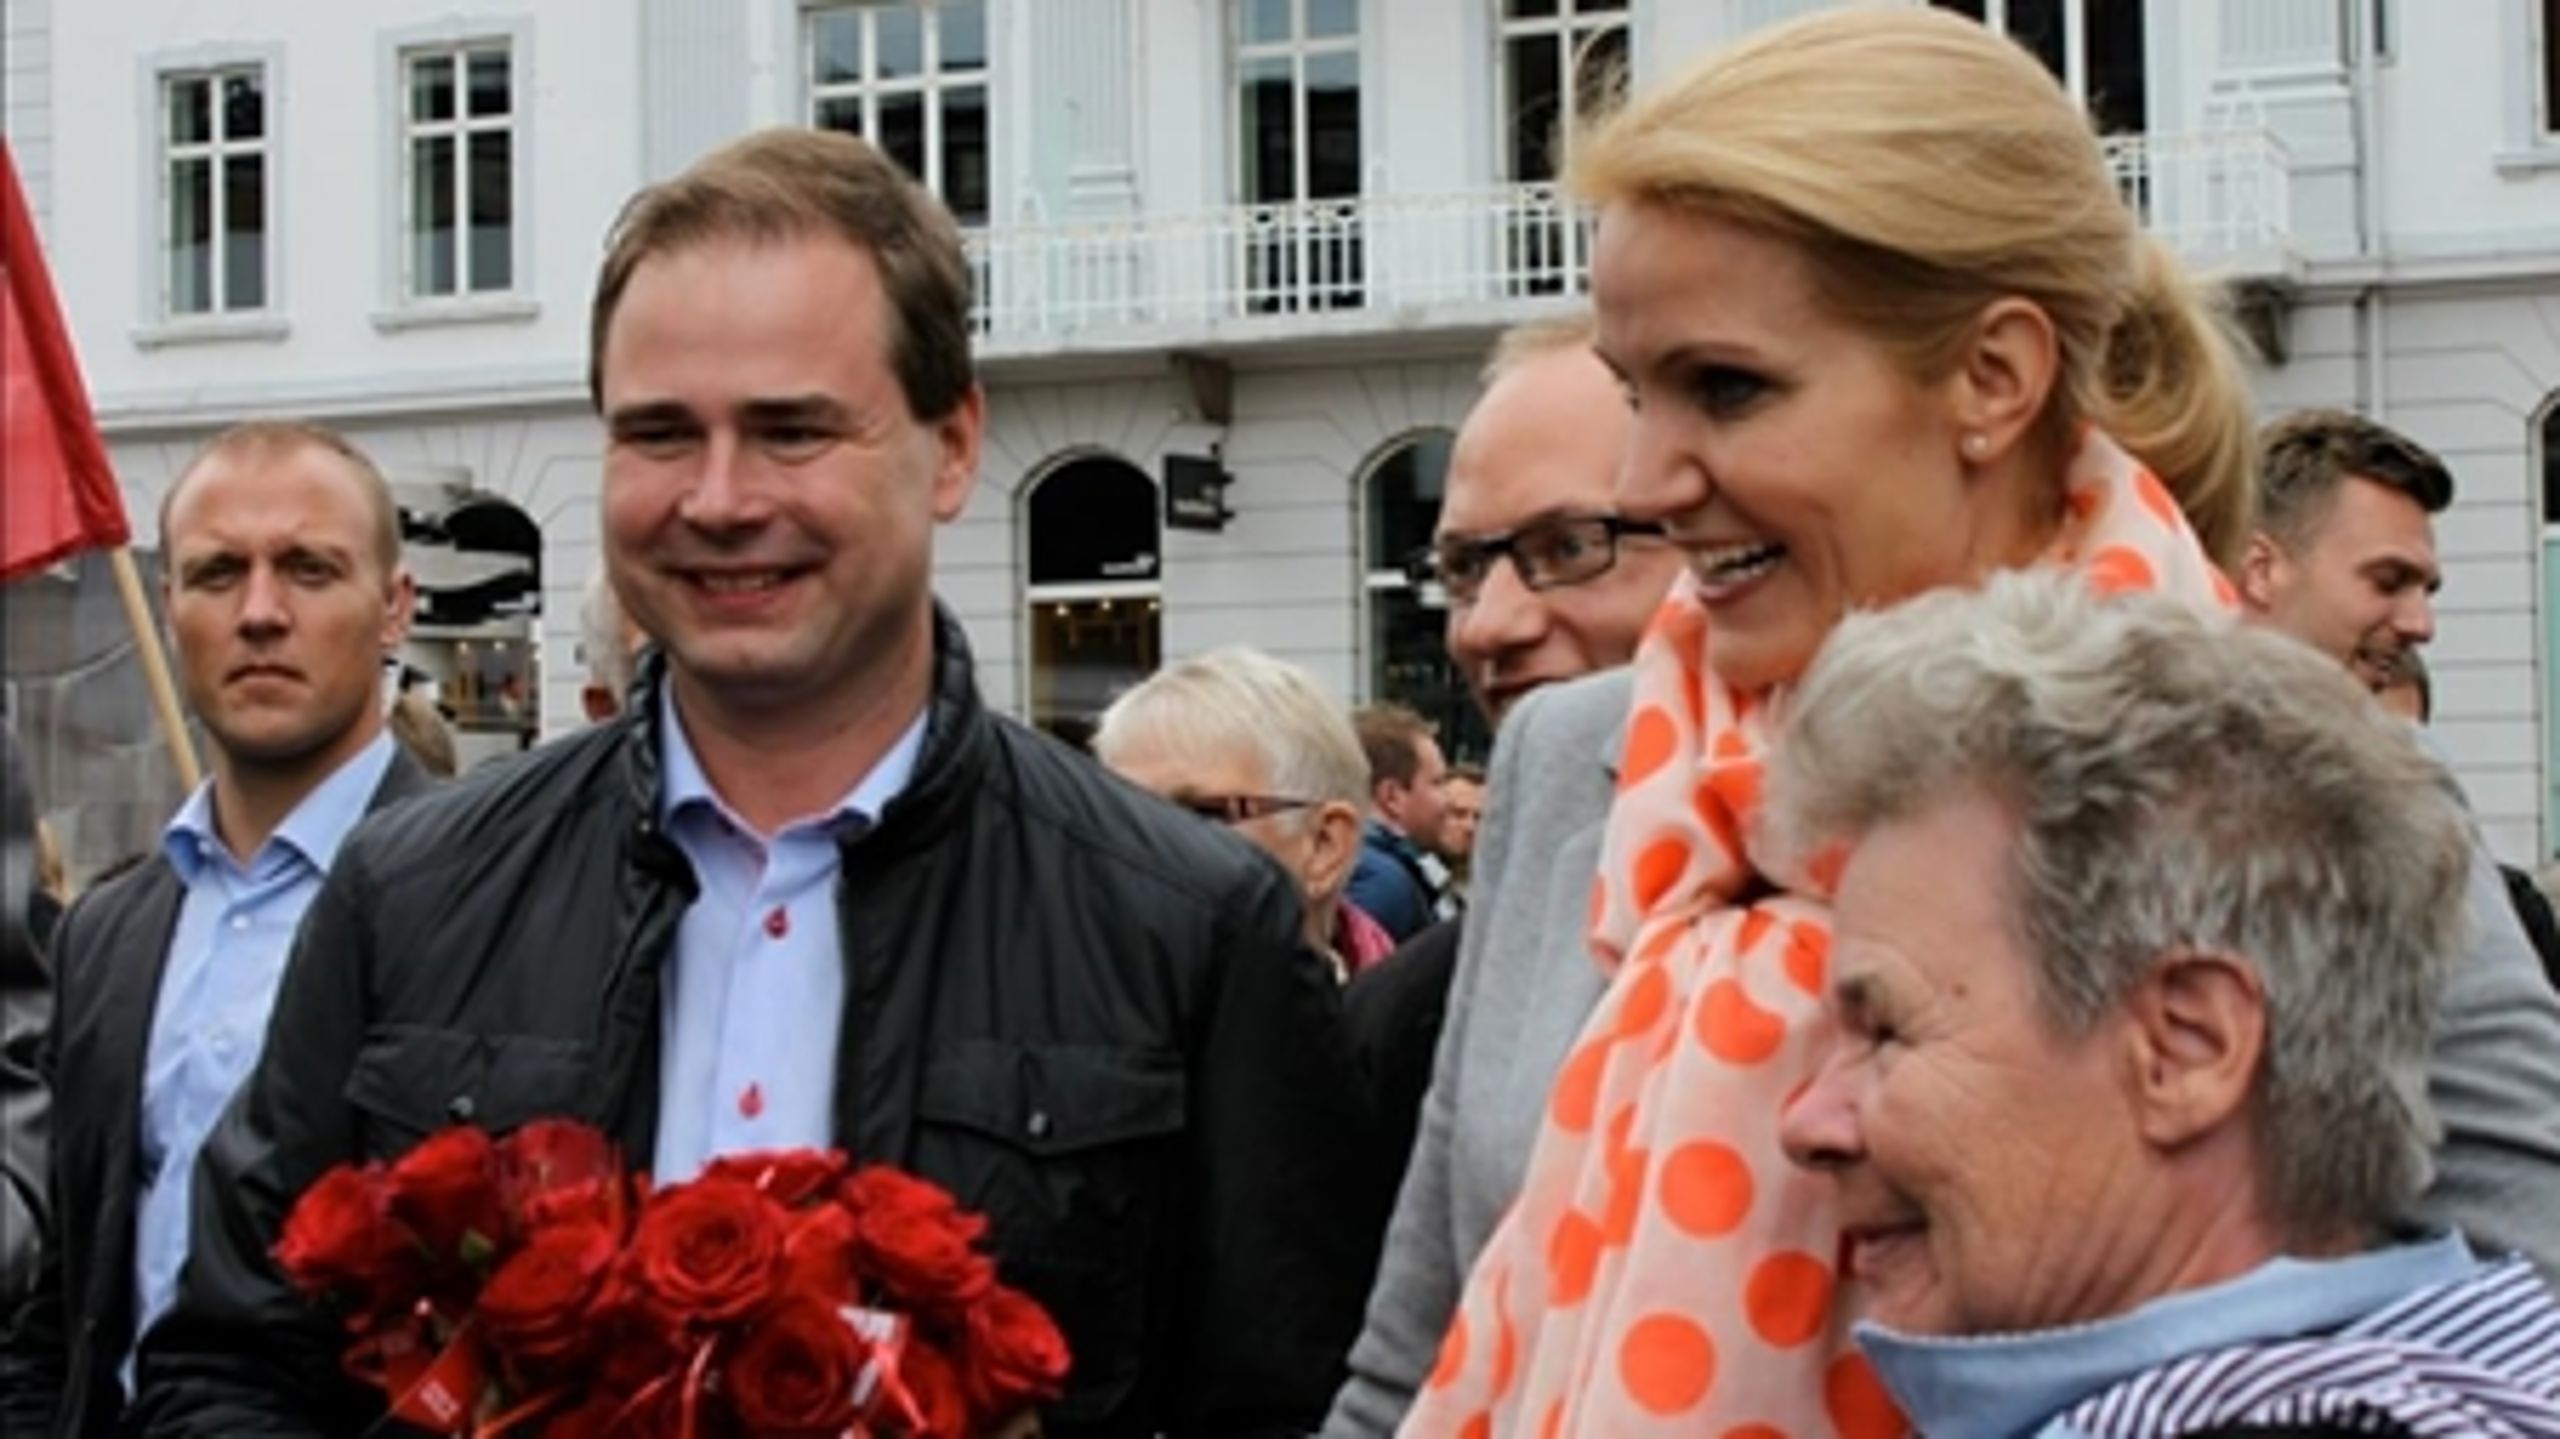 Europaminister Nicolai Wammen læner sig op ad statsminister Helle Thorning-Schmidt i sagen om en EU-finansskat. Han vil ikke udtale sig til Altinget.dk.